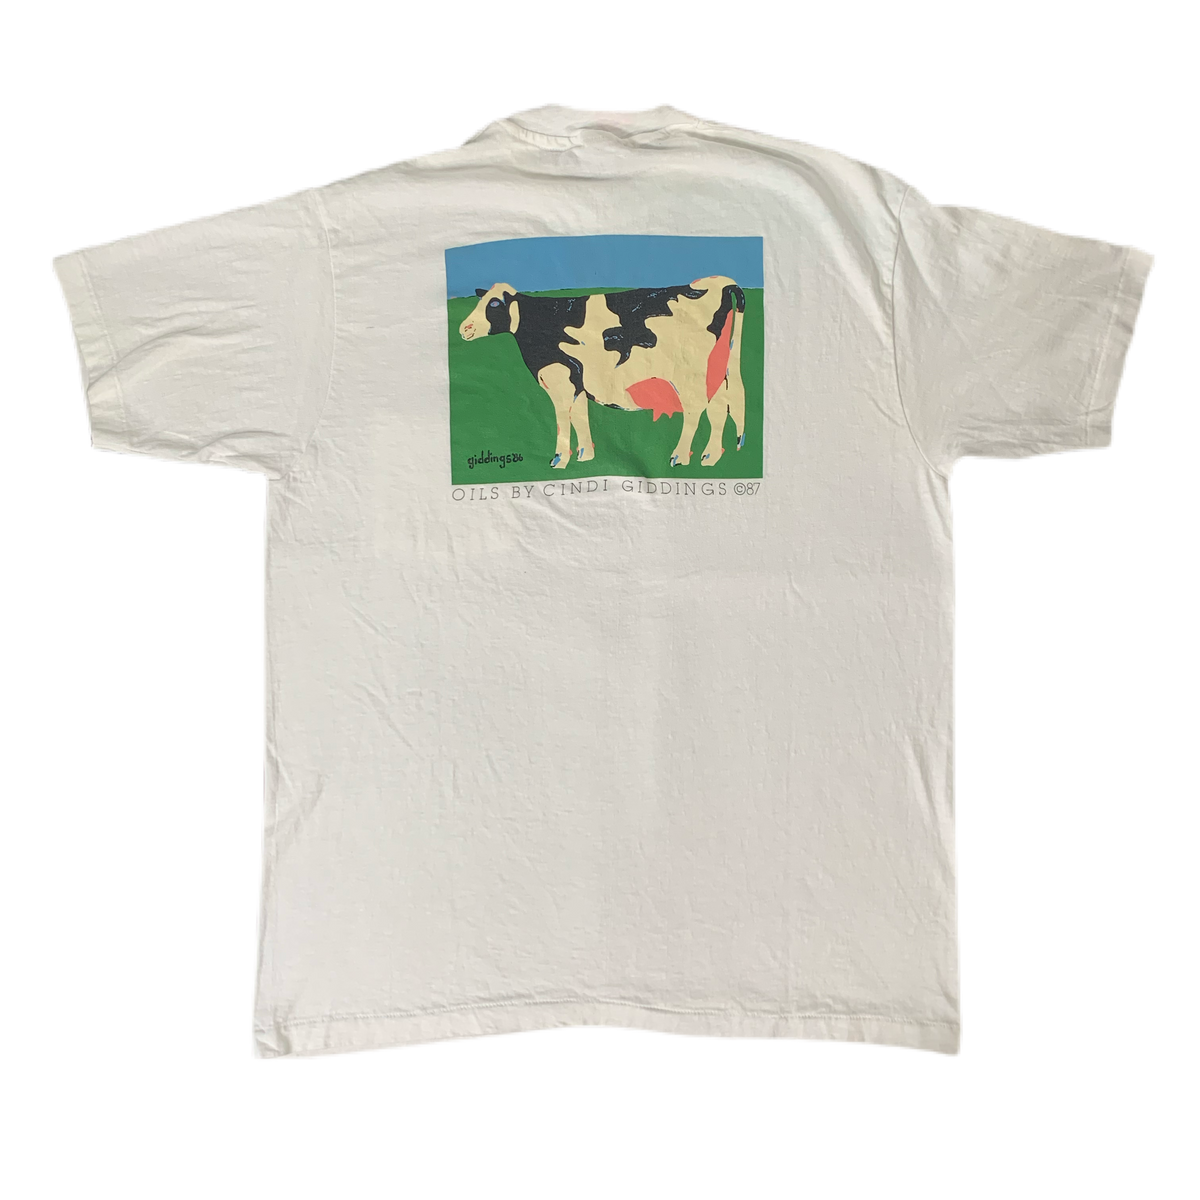 Vintage Cindi Giddings “Cow” T-Shirt